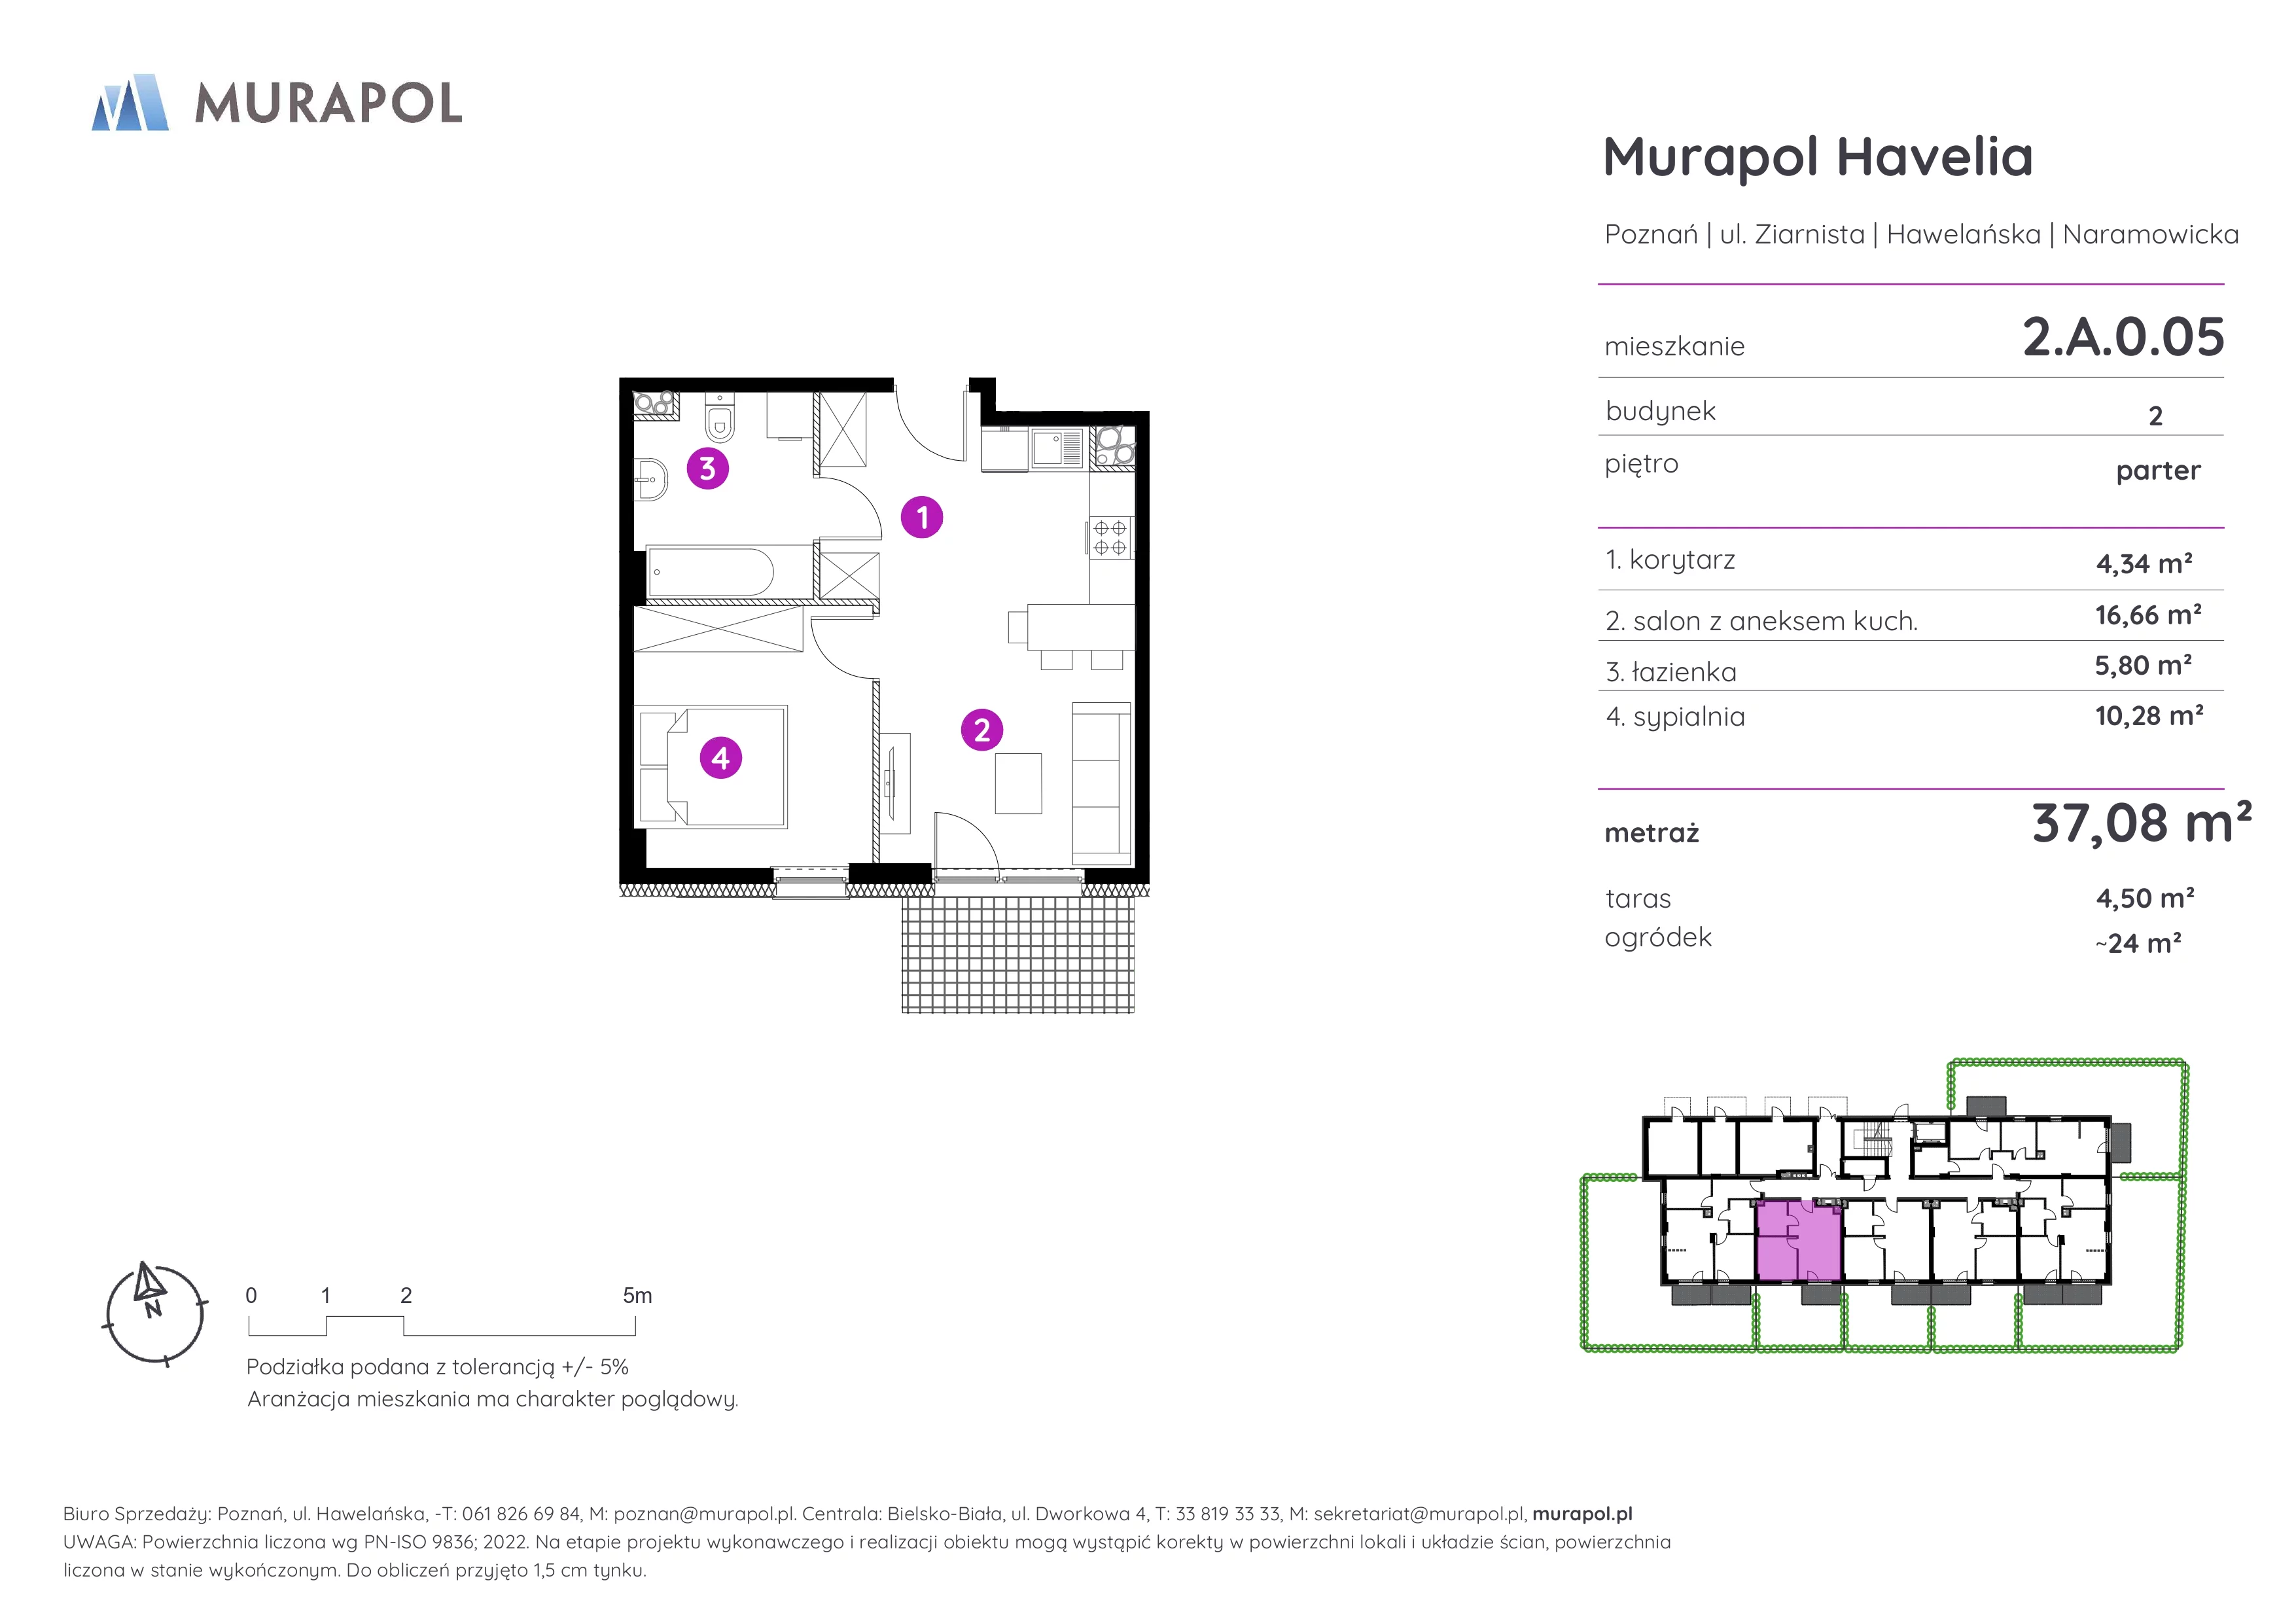 Mieszkanie 37,08 m², parter, oferta nr 2.A.0.05, Murapol Havelia, Poznań, Winogrady, Stare Winogrady, ul. Ziarnista / Naramowicka